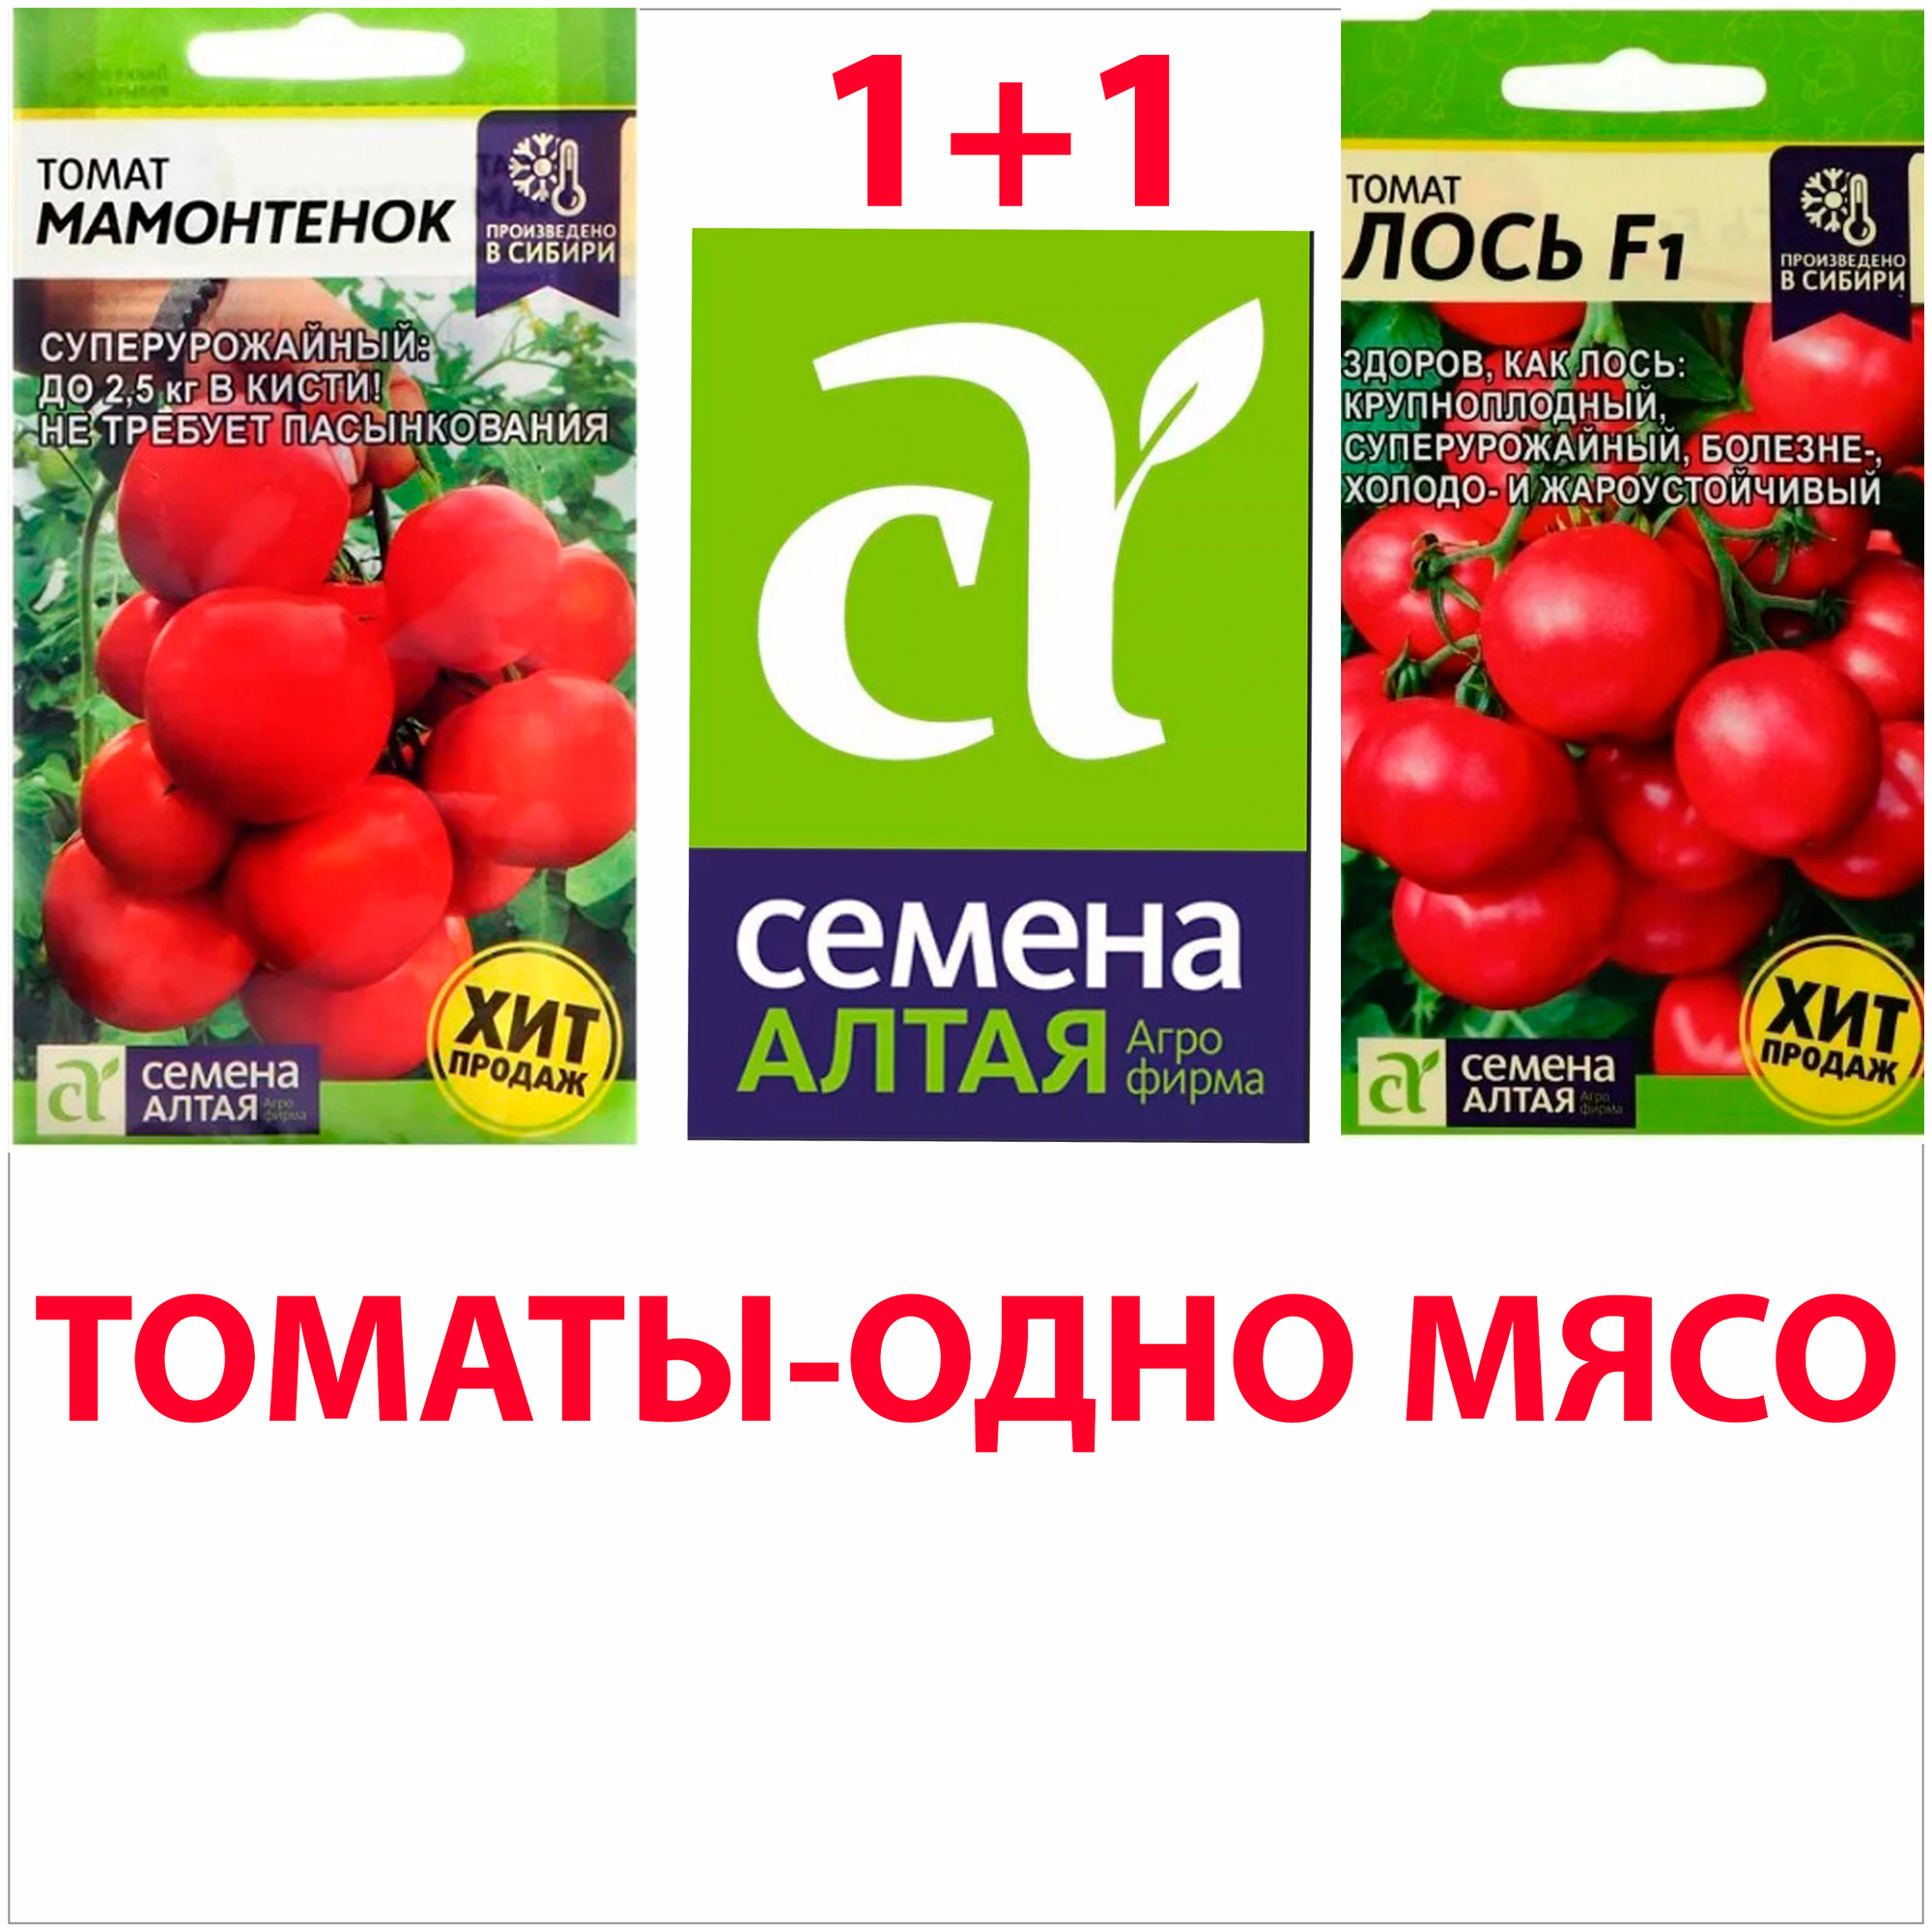 Семена Алтая Томат Лось+ Томат Мамонтенок Набор — купить в  интернет-магазине по низкой цене на Яндекс Маркете